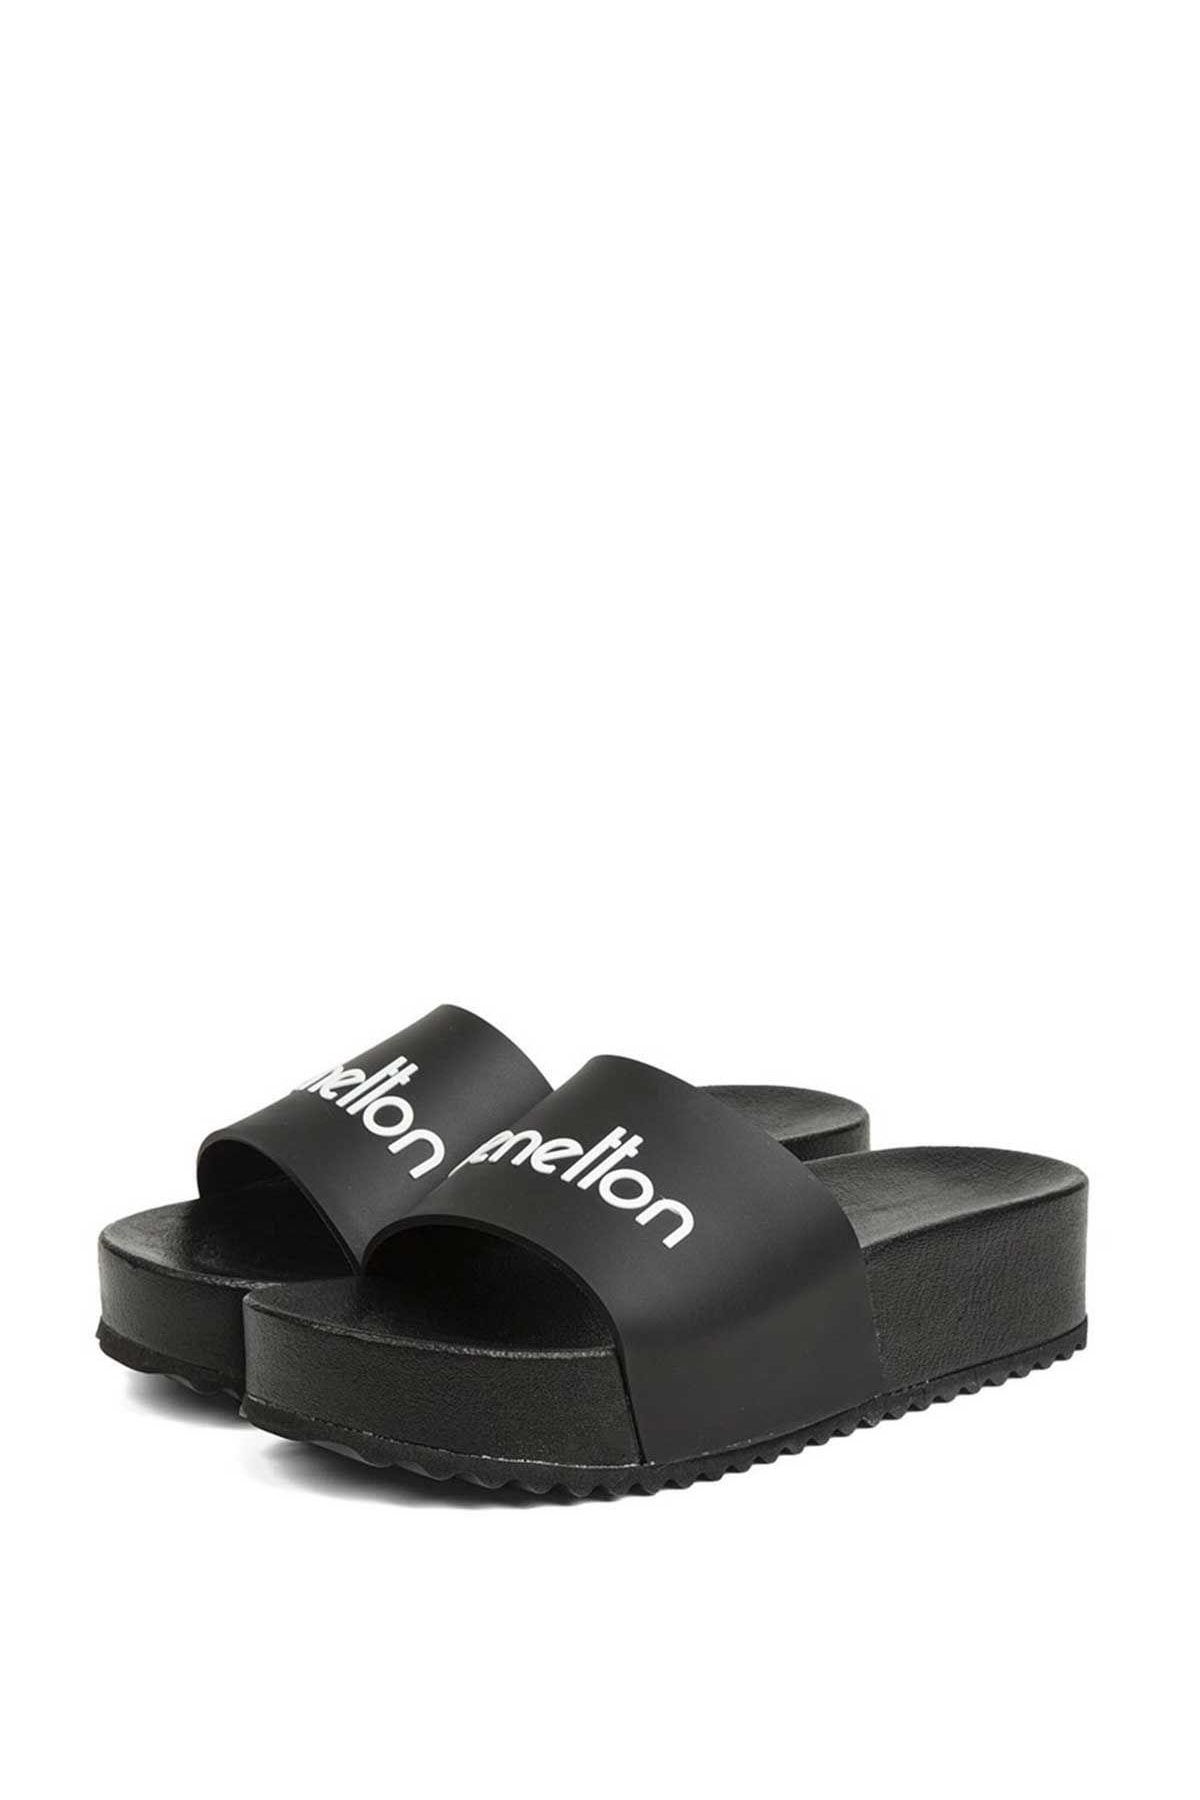 Benetton Sandalet